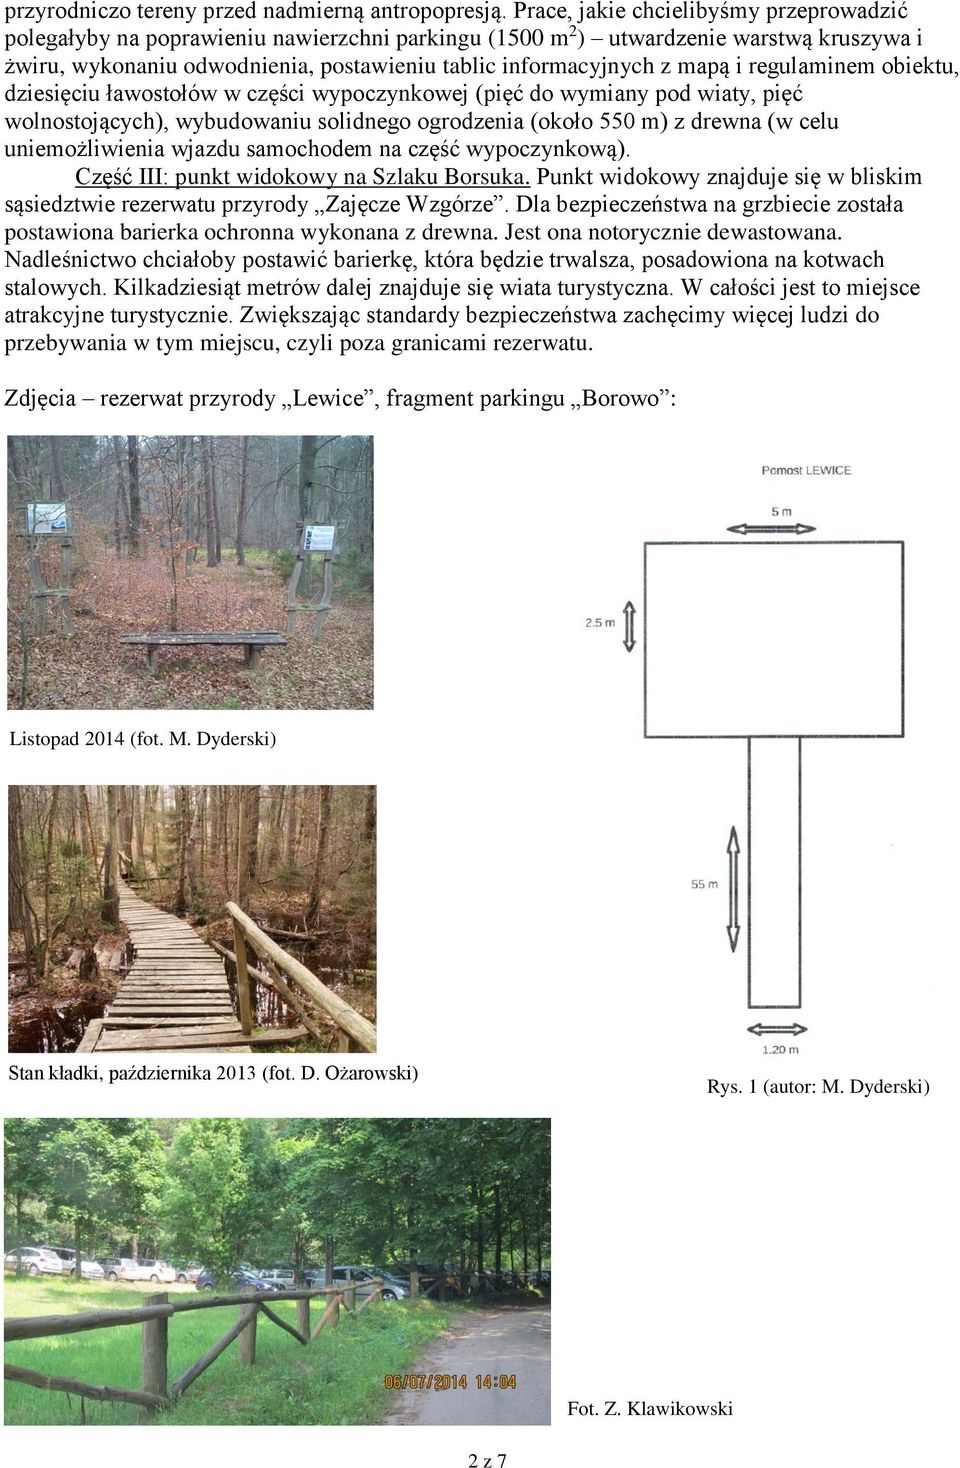 mapą i regulaminem obiektu, dziesięciu ławostołów w części wypoczynkowej (pięć do wymiany pod wiaty, pięć wolnostojących), wybudowaniu solidnego ogrodzenia (około 550 m) z drewna (w celu